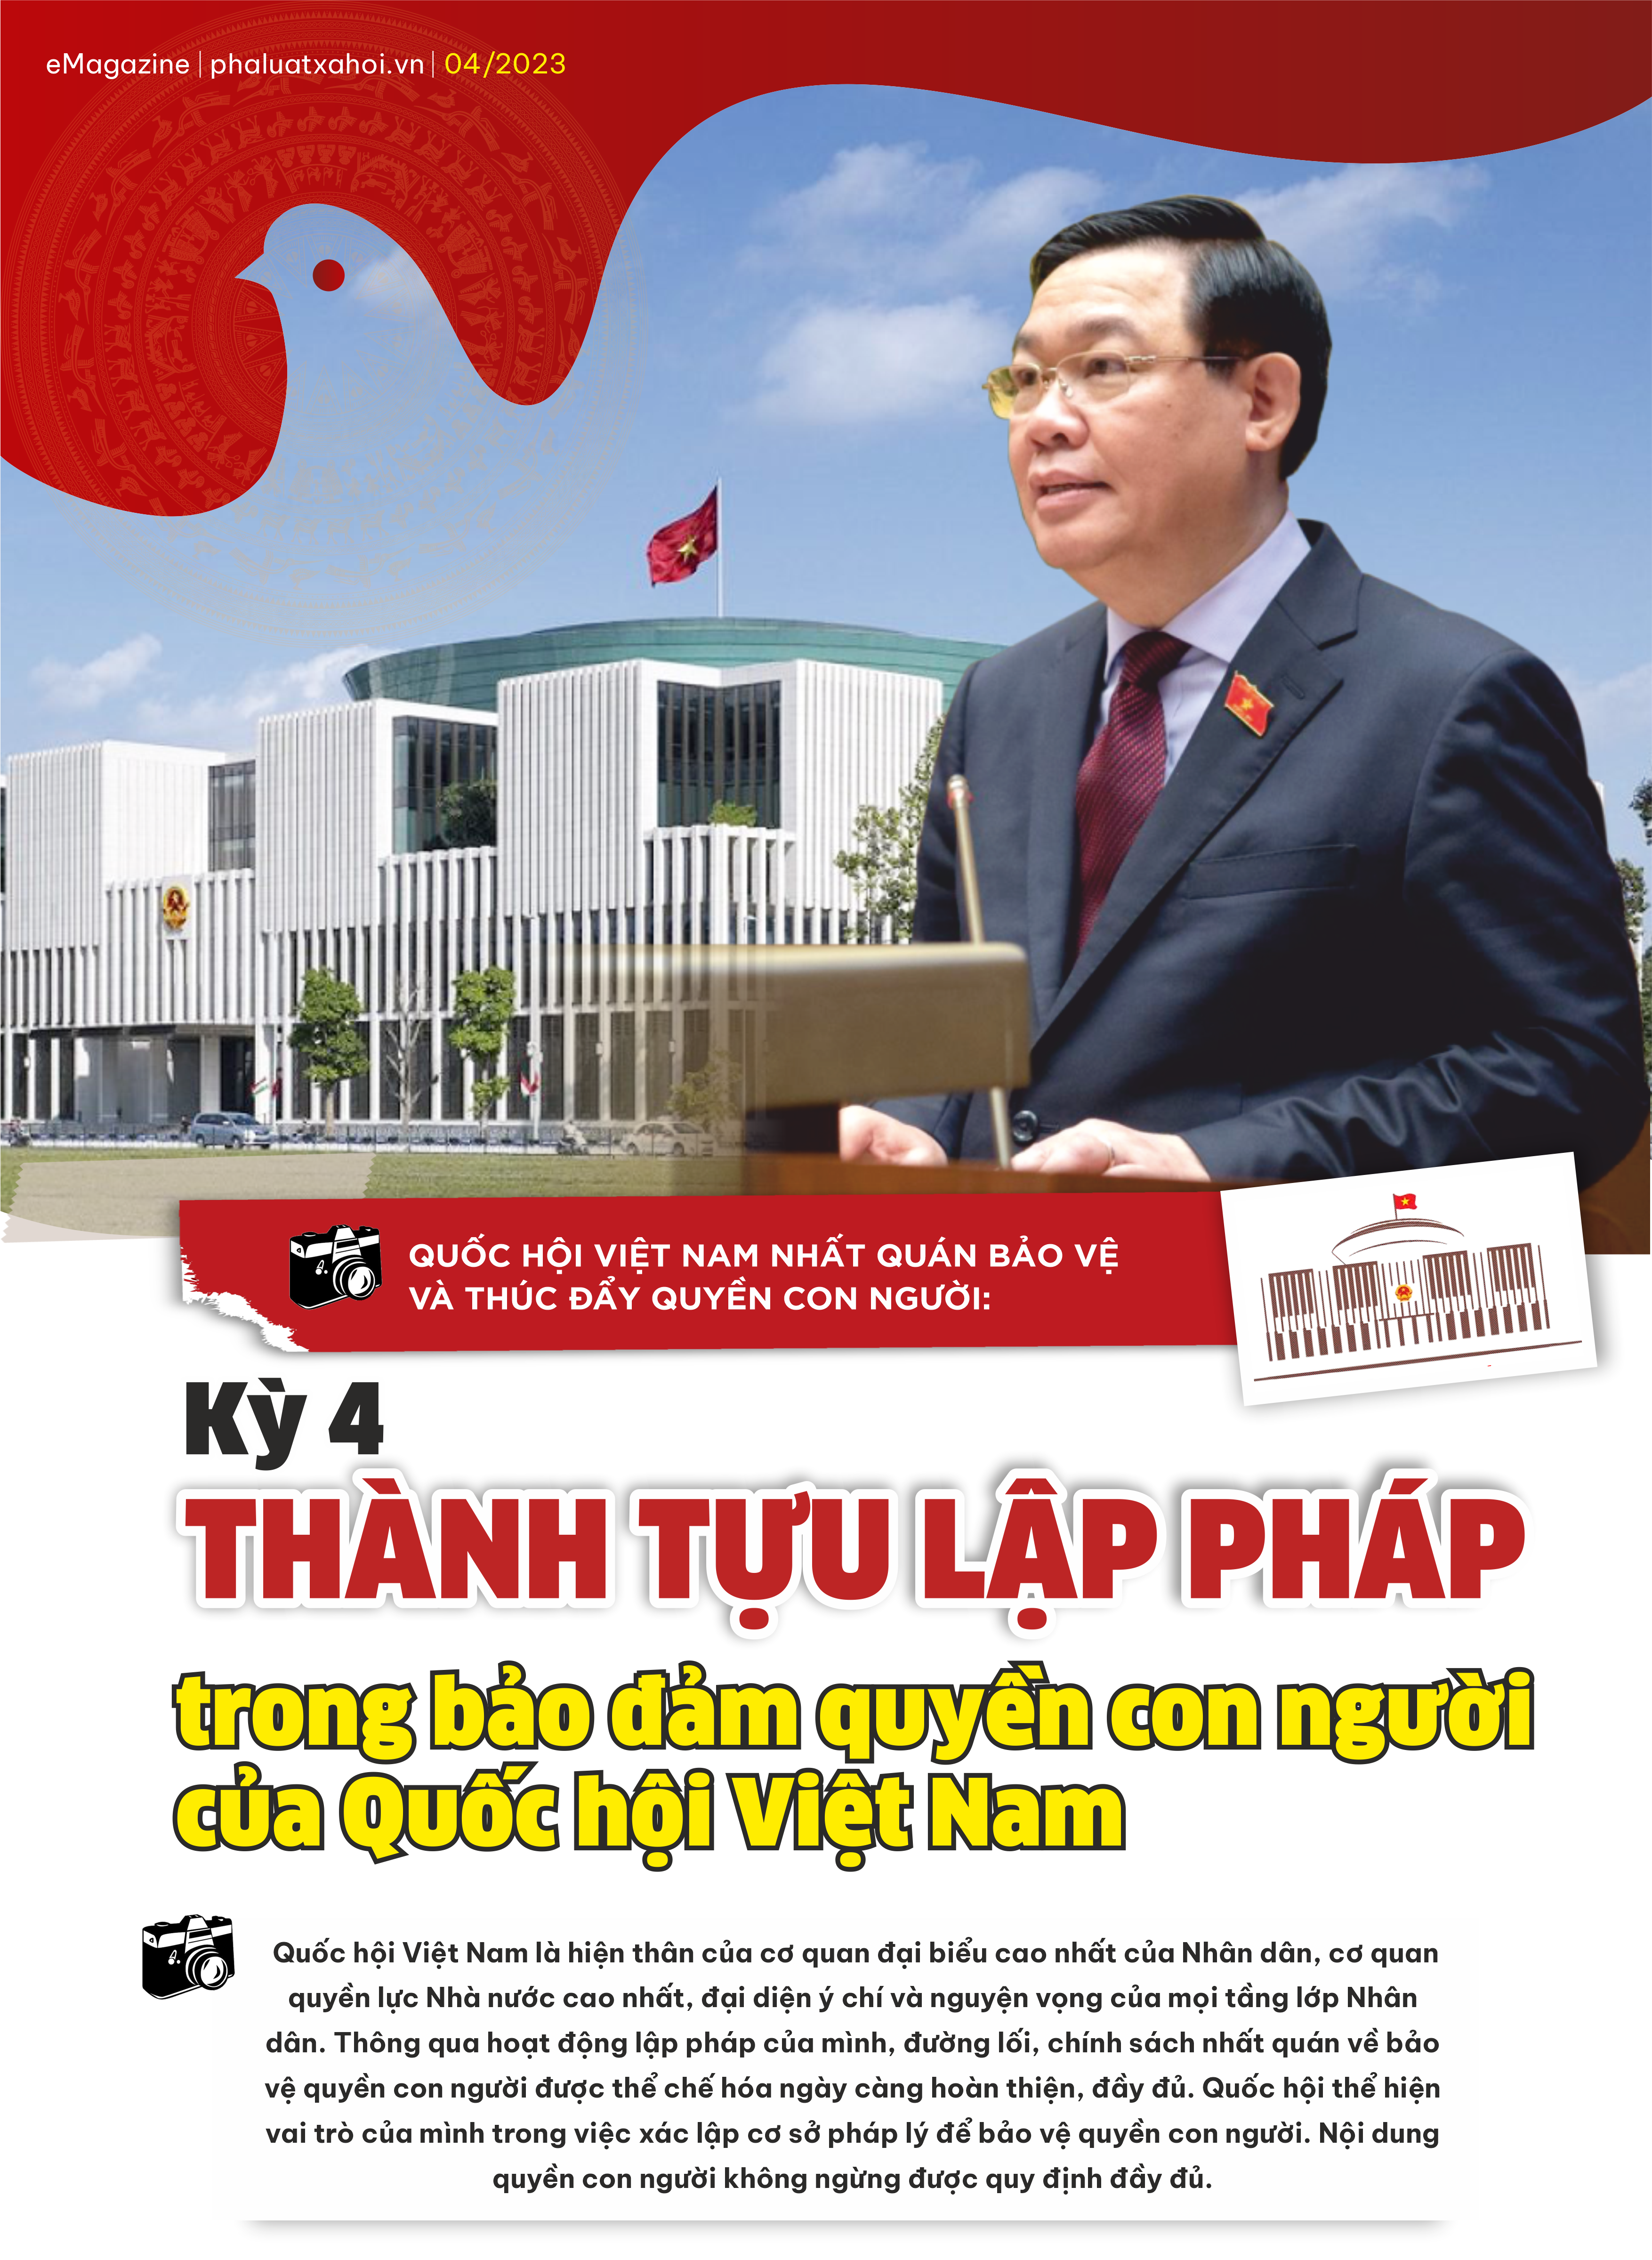 Kỳ 4: Thành tựu lập pháp trong bảo đảm quyền con người của Quốc hội Việt Nam